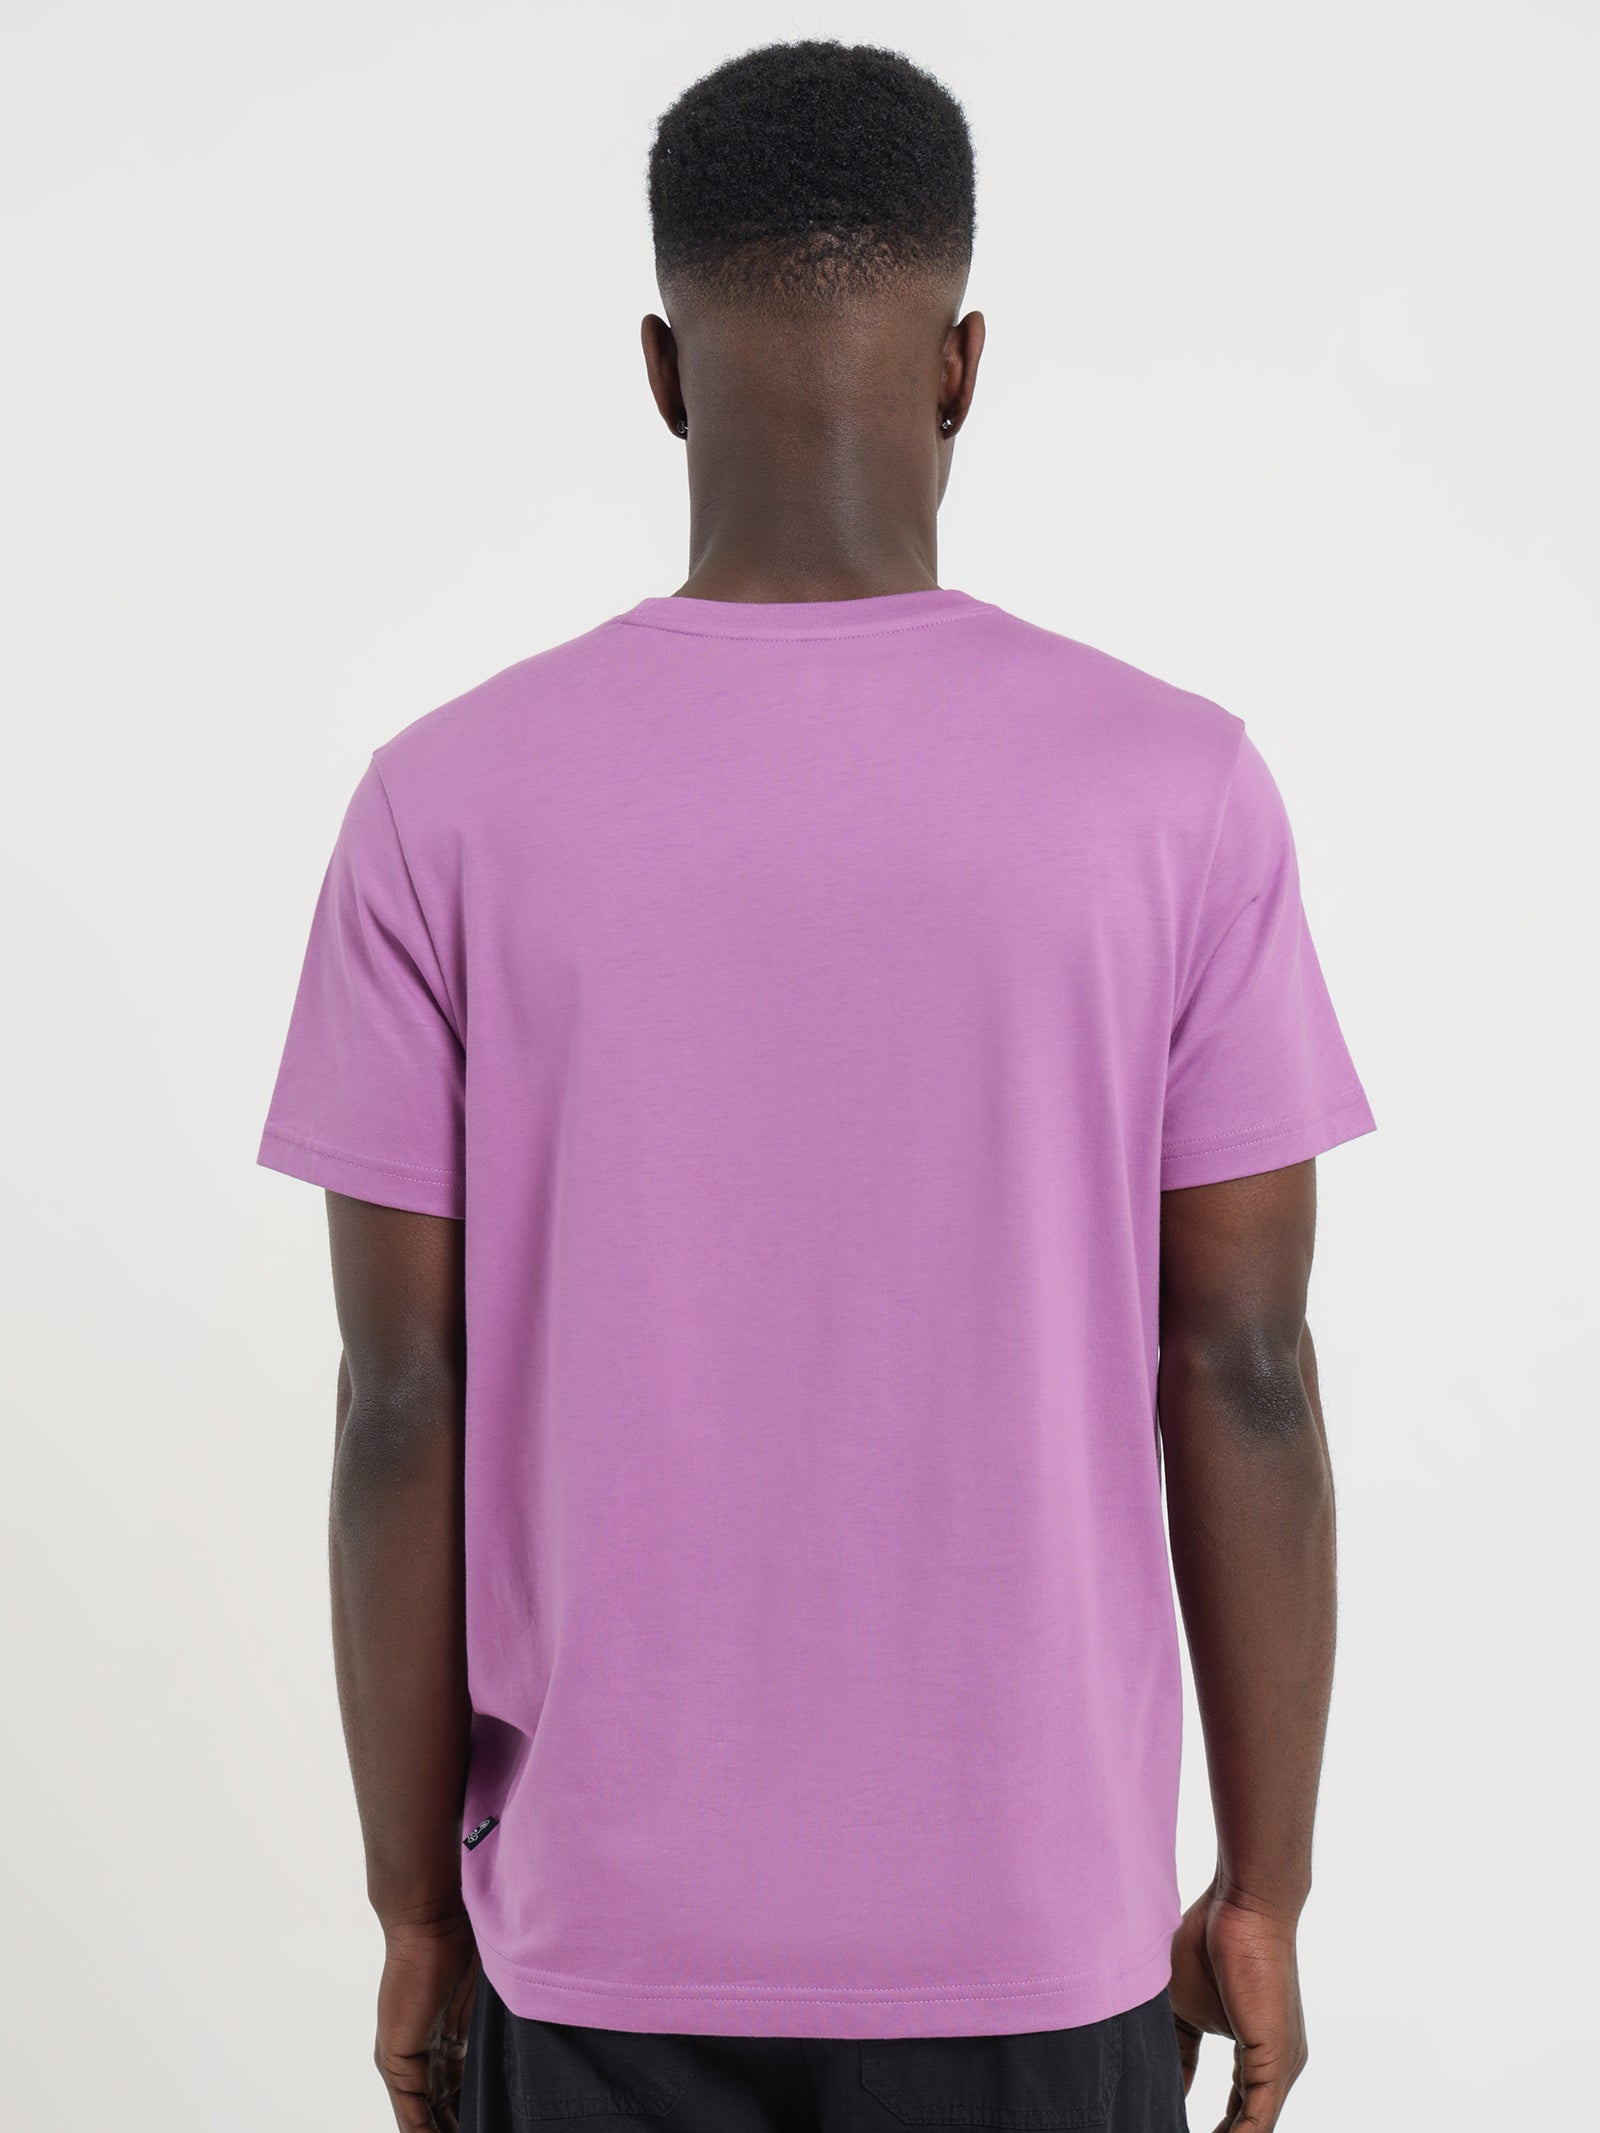 Owen T-Shirt in Purple Haze